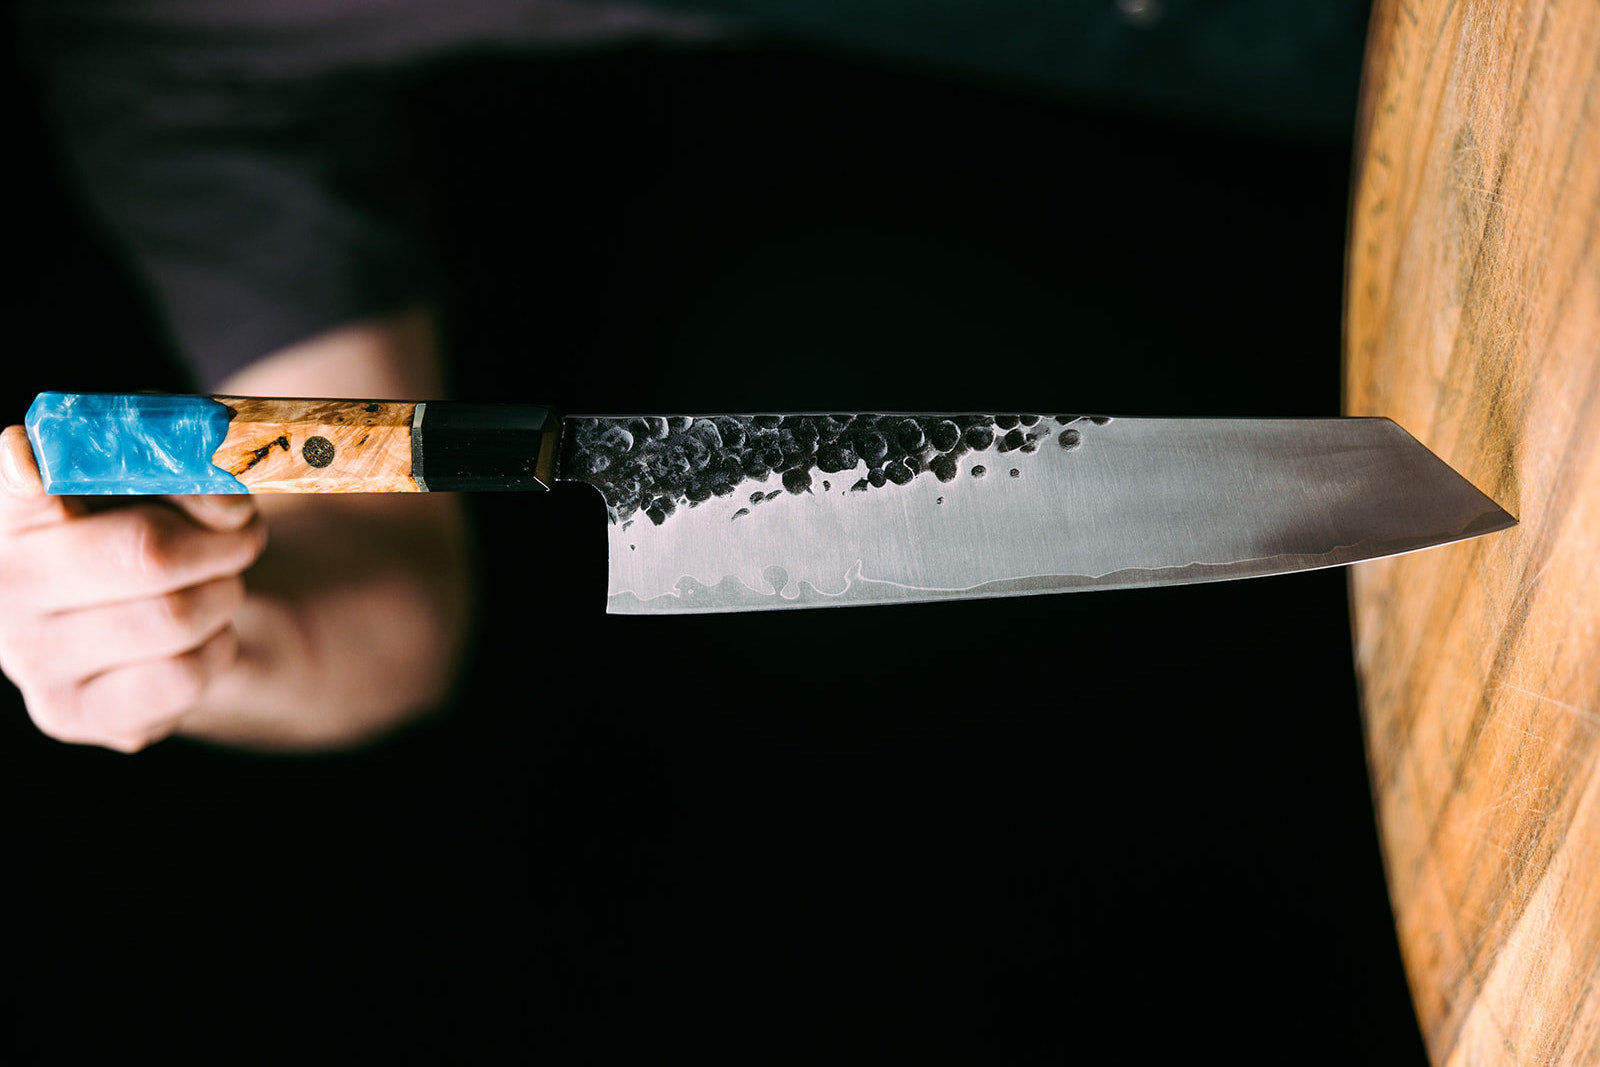 Handmade Chef's Kitchen Knives Bunka Japanese knife San Mai Steel